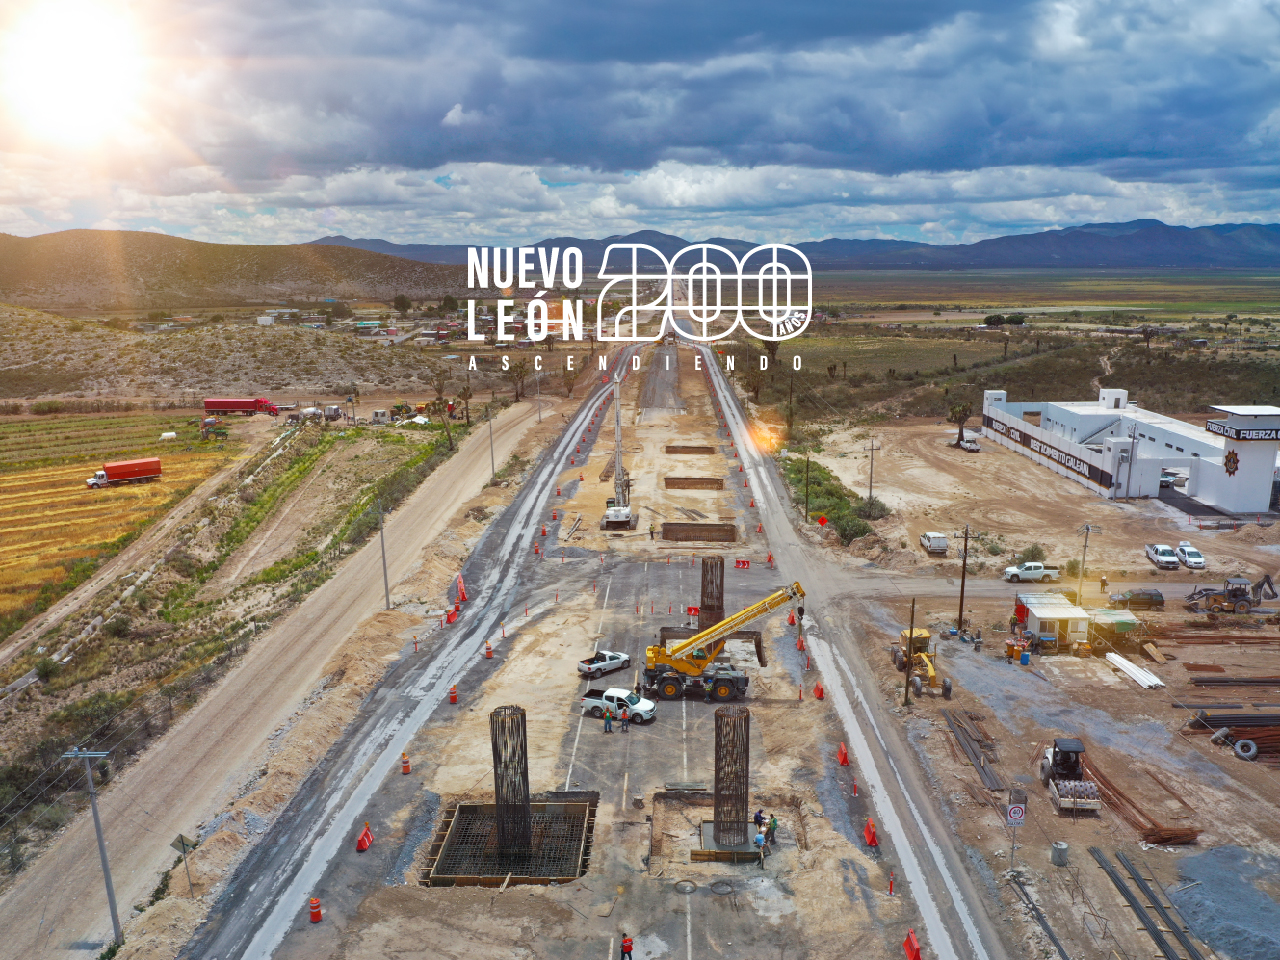 Obras y proyectos que marcarán el nuevo legado de Nuevo León